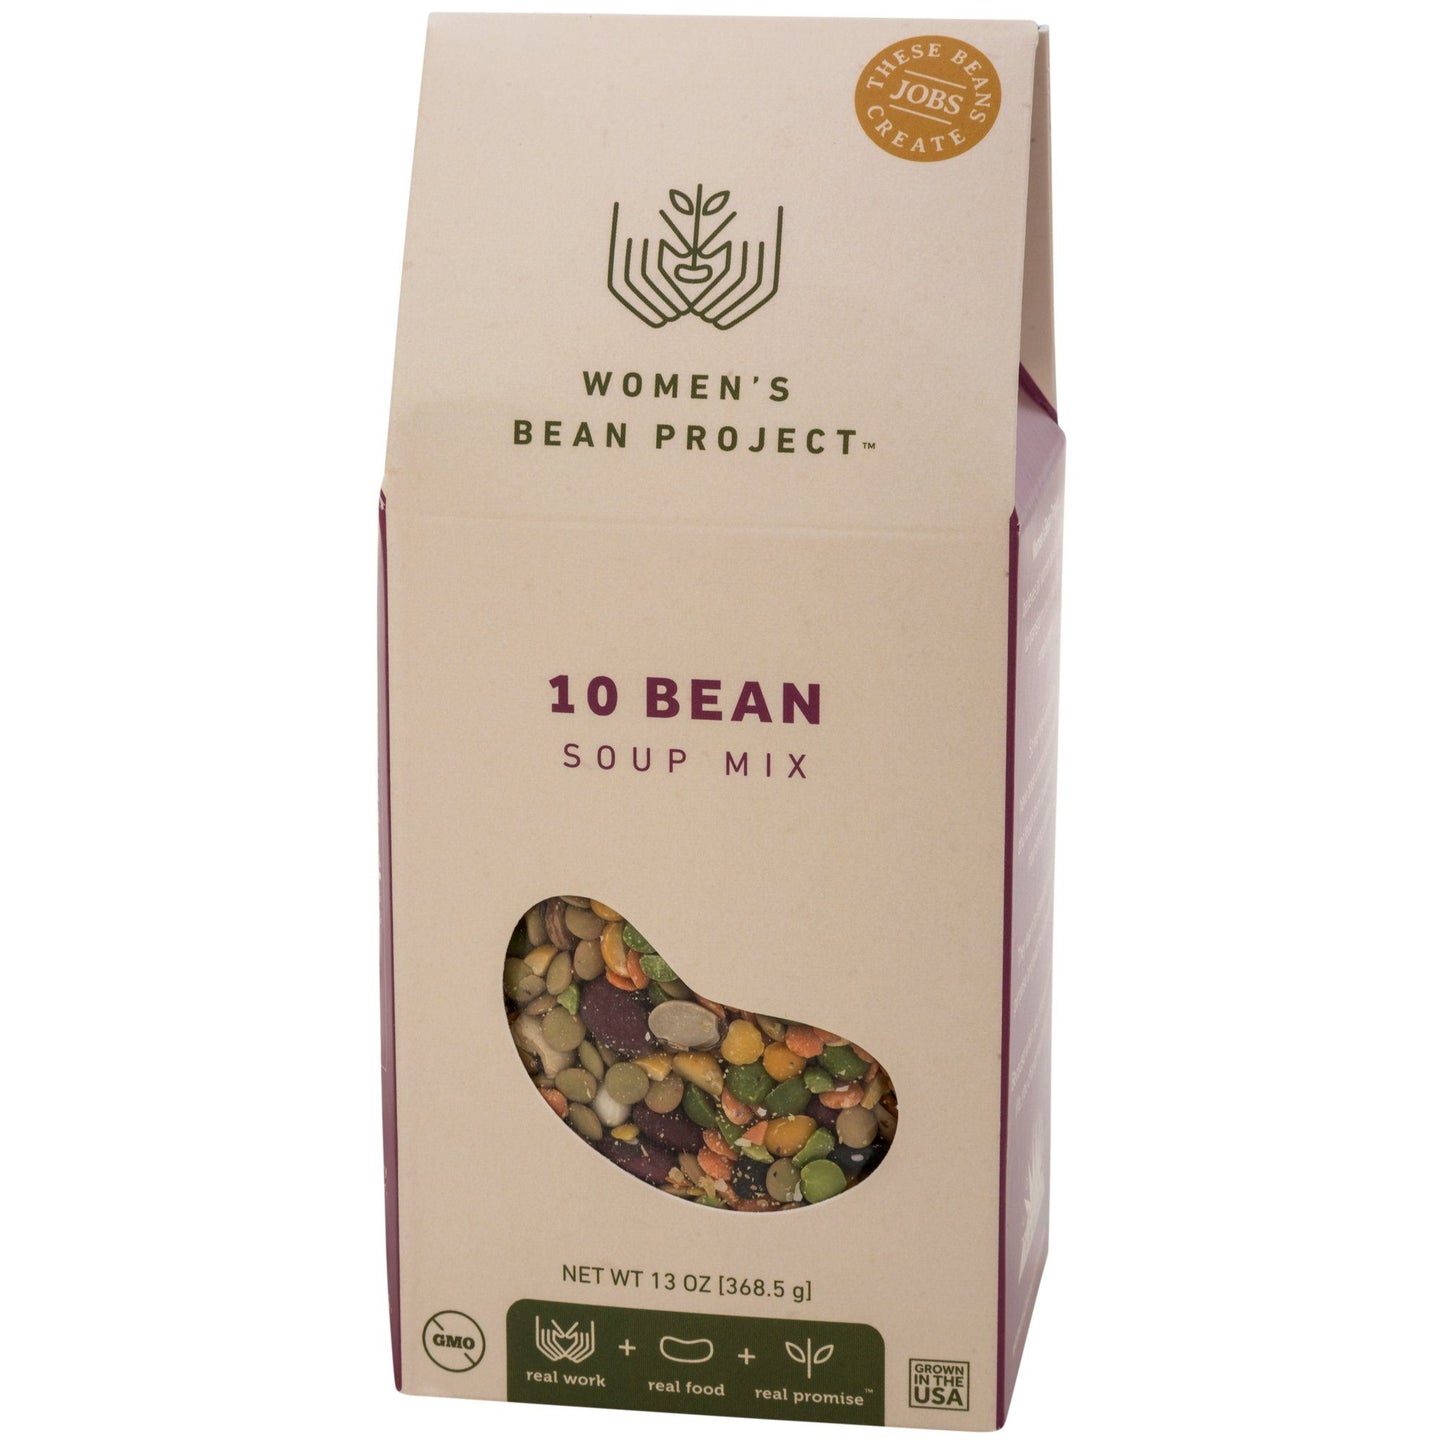 Women's Bean Project Soup Mix